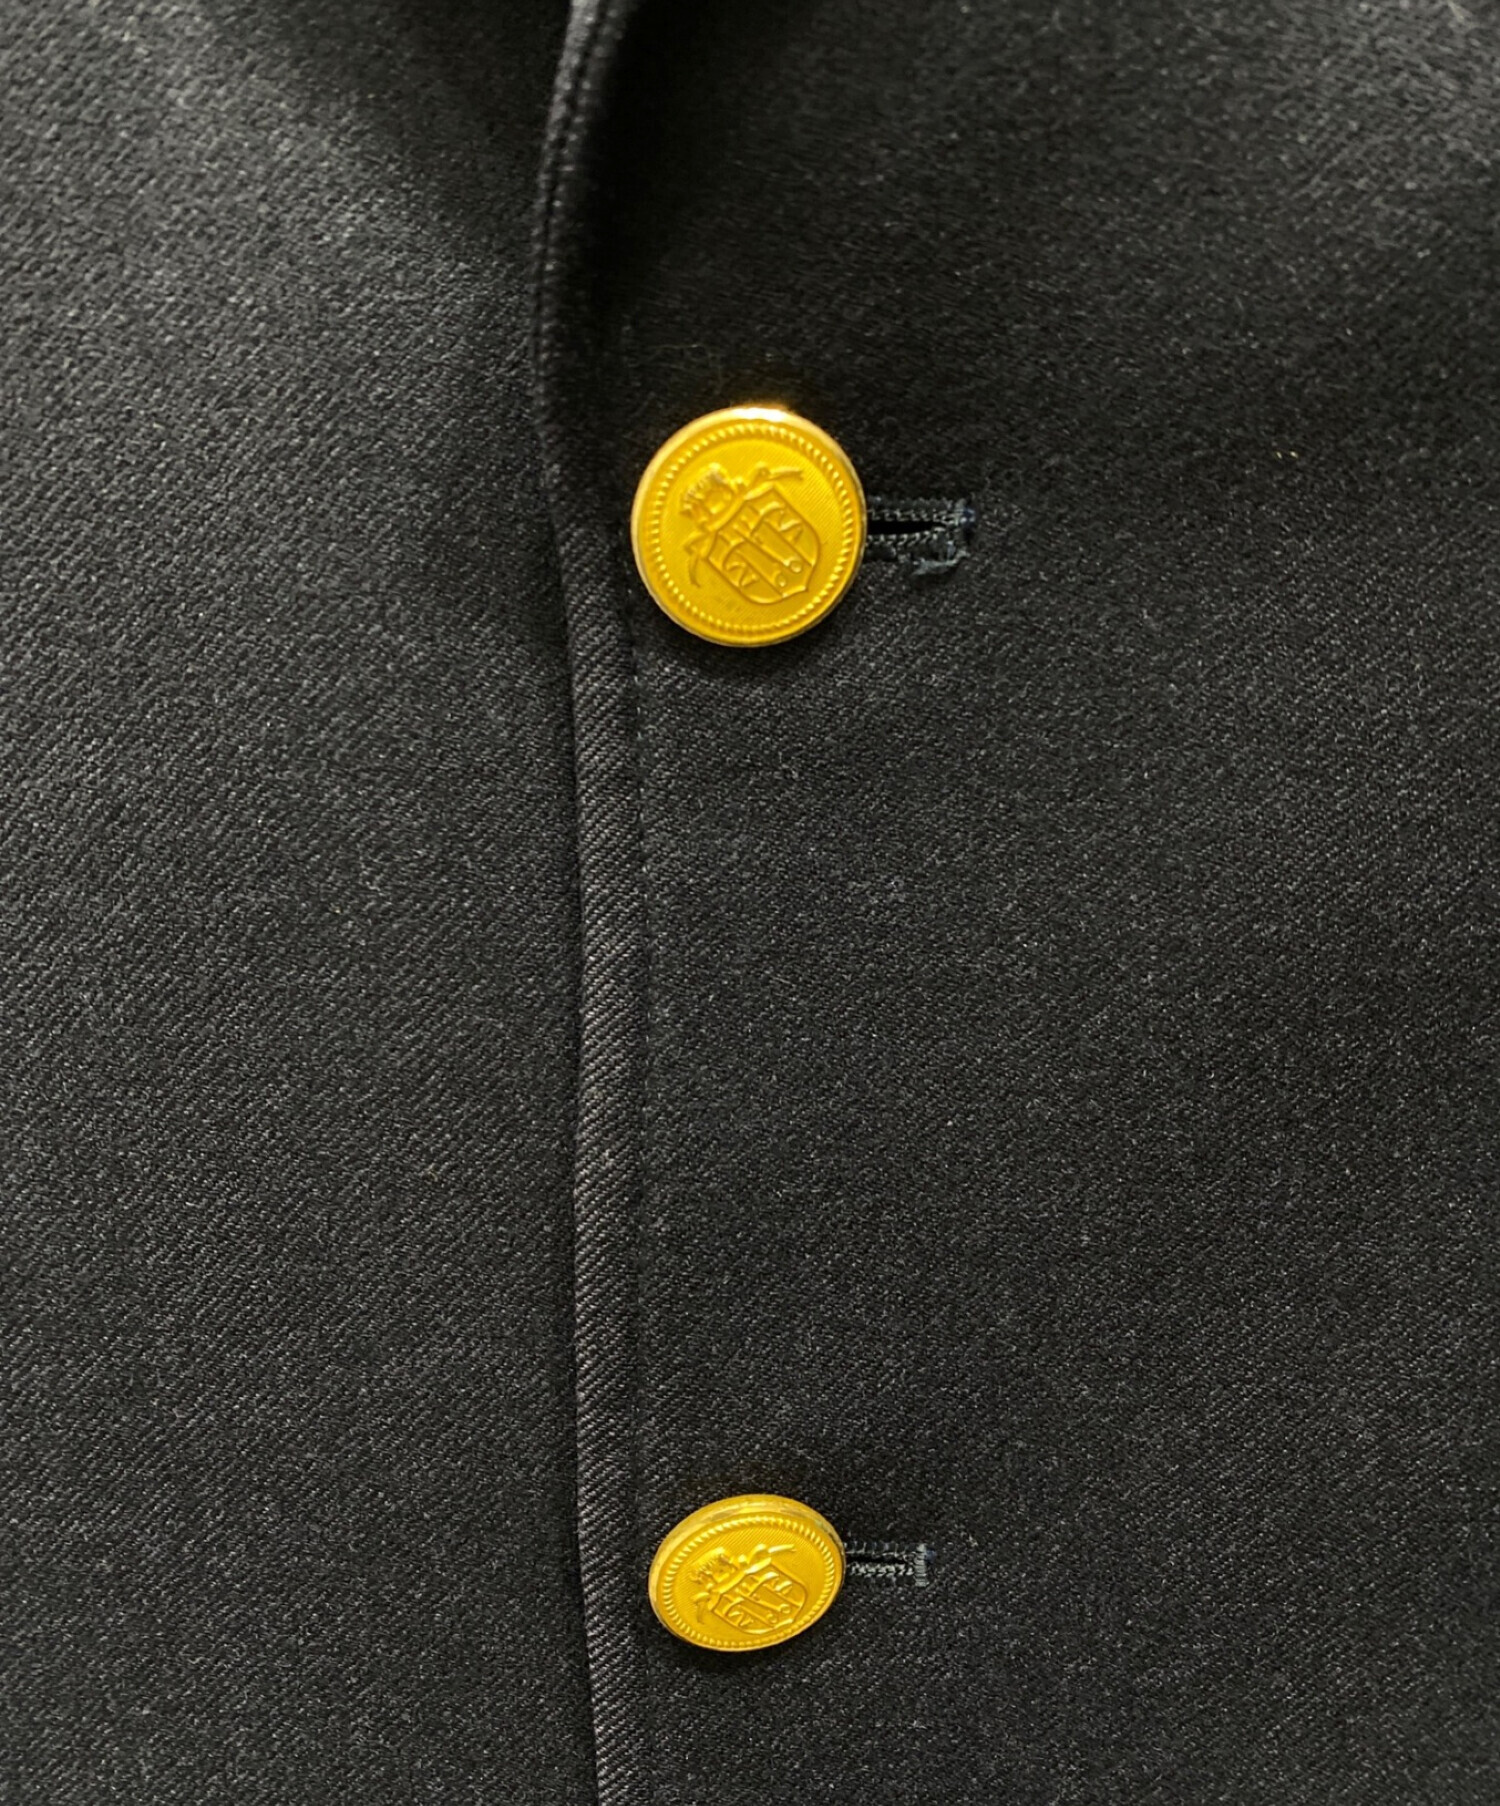 紺ブレザー 段返り3釦 ウール size T180 赤パイピング 金釦 ボタン 毛